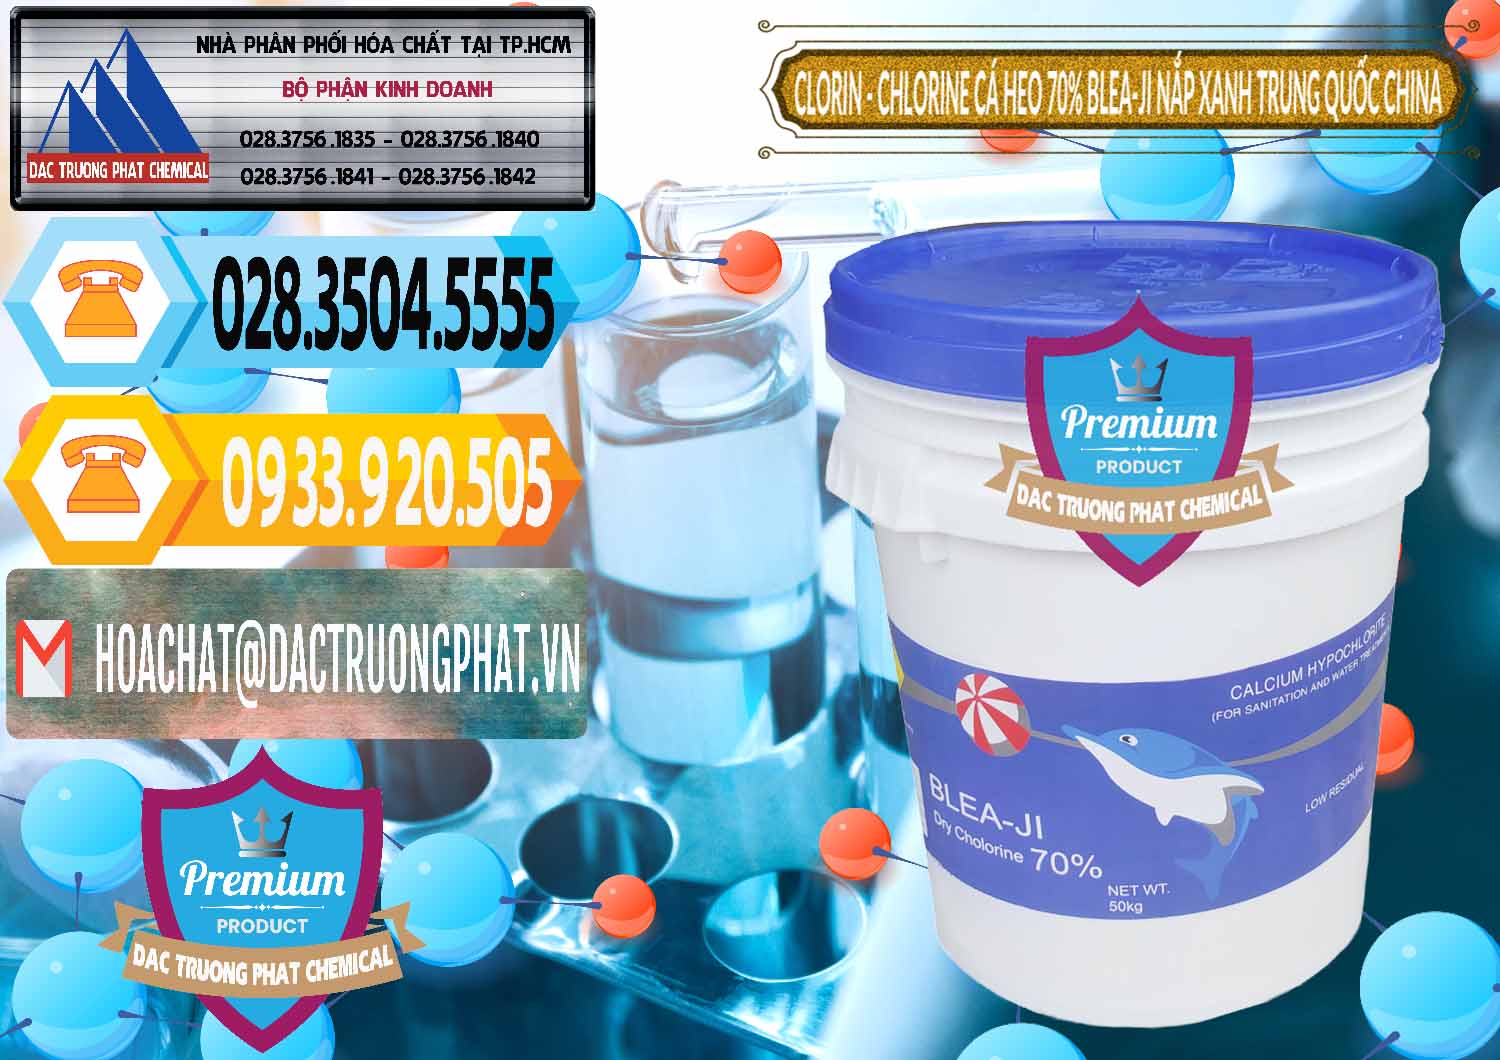 Công ty phân phối và bán Clorin - Chlorine Cá Heo 70% Cá Heo Blea-Ji Thùng Tròn Nắp Xanh Trung Quốc China - 0208 - Cung cấp - phân phối hóa chất tại TP.HCM - hoachattayrua.net